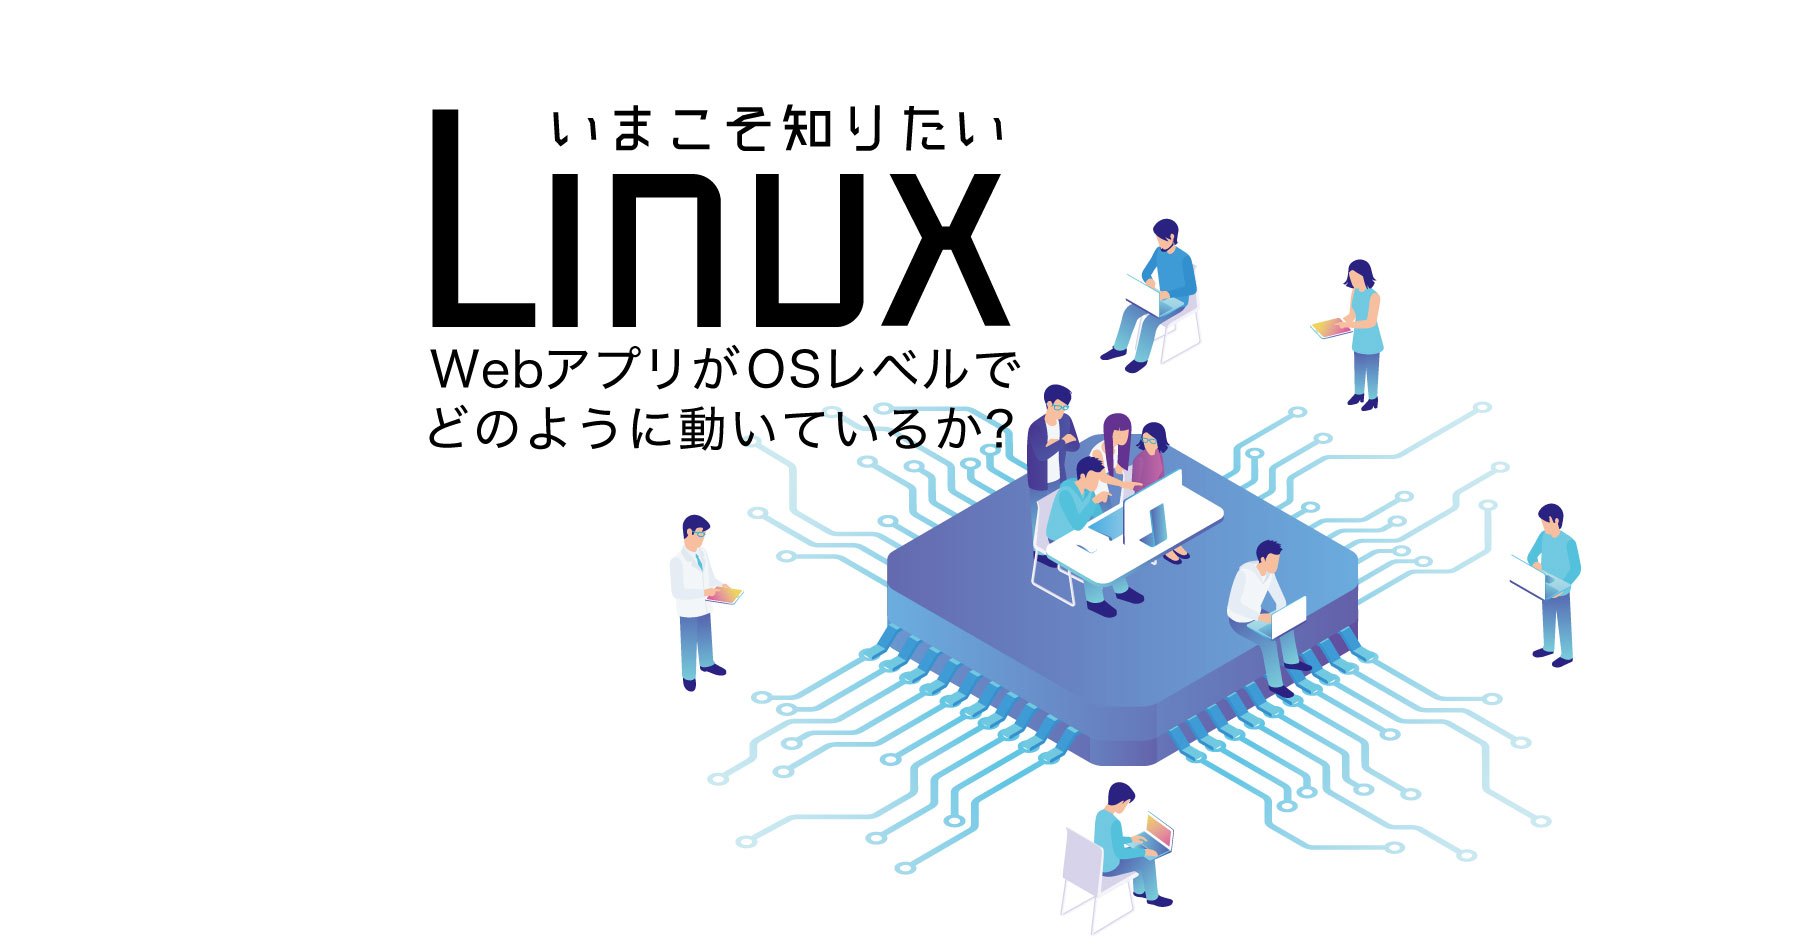 いま知っておきたいLinux─WebアプリがOSのプロセスとしてどのように見えるか？ を運用に生かす